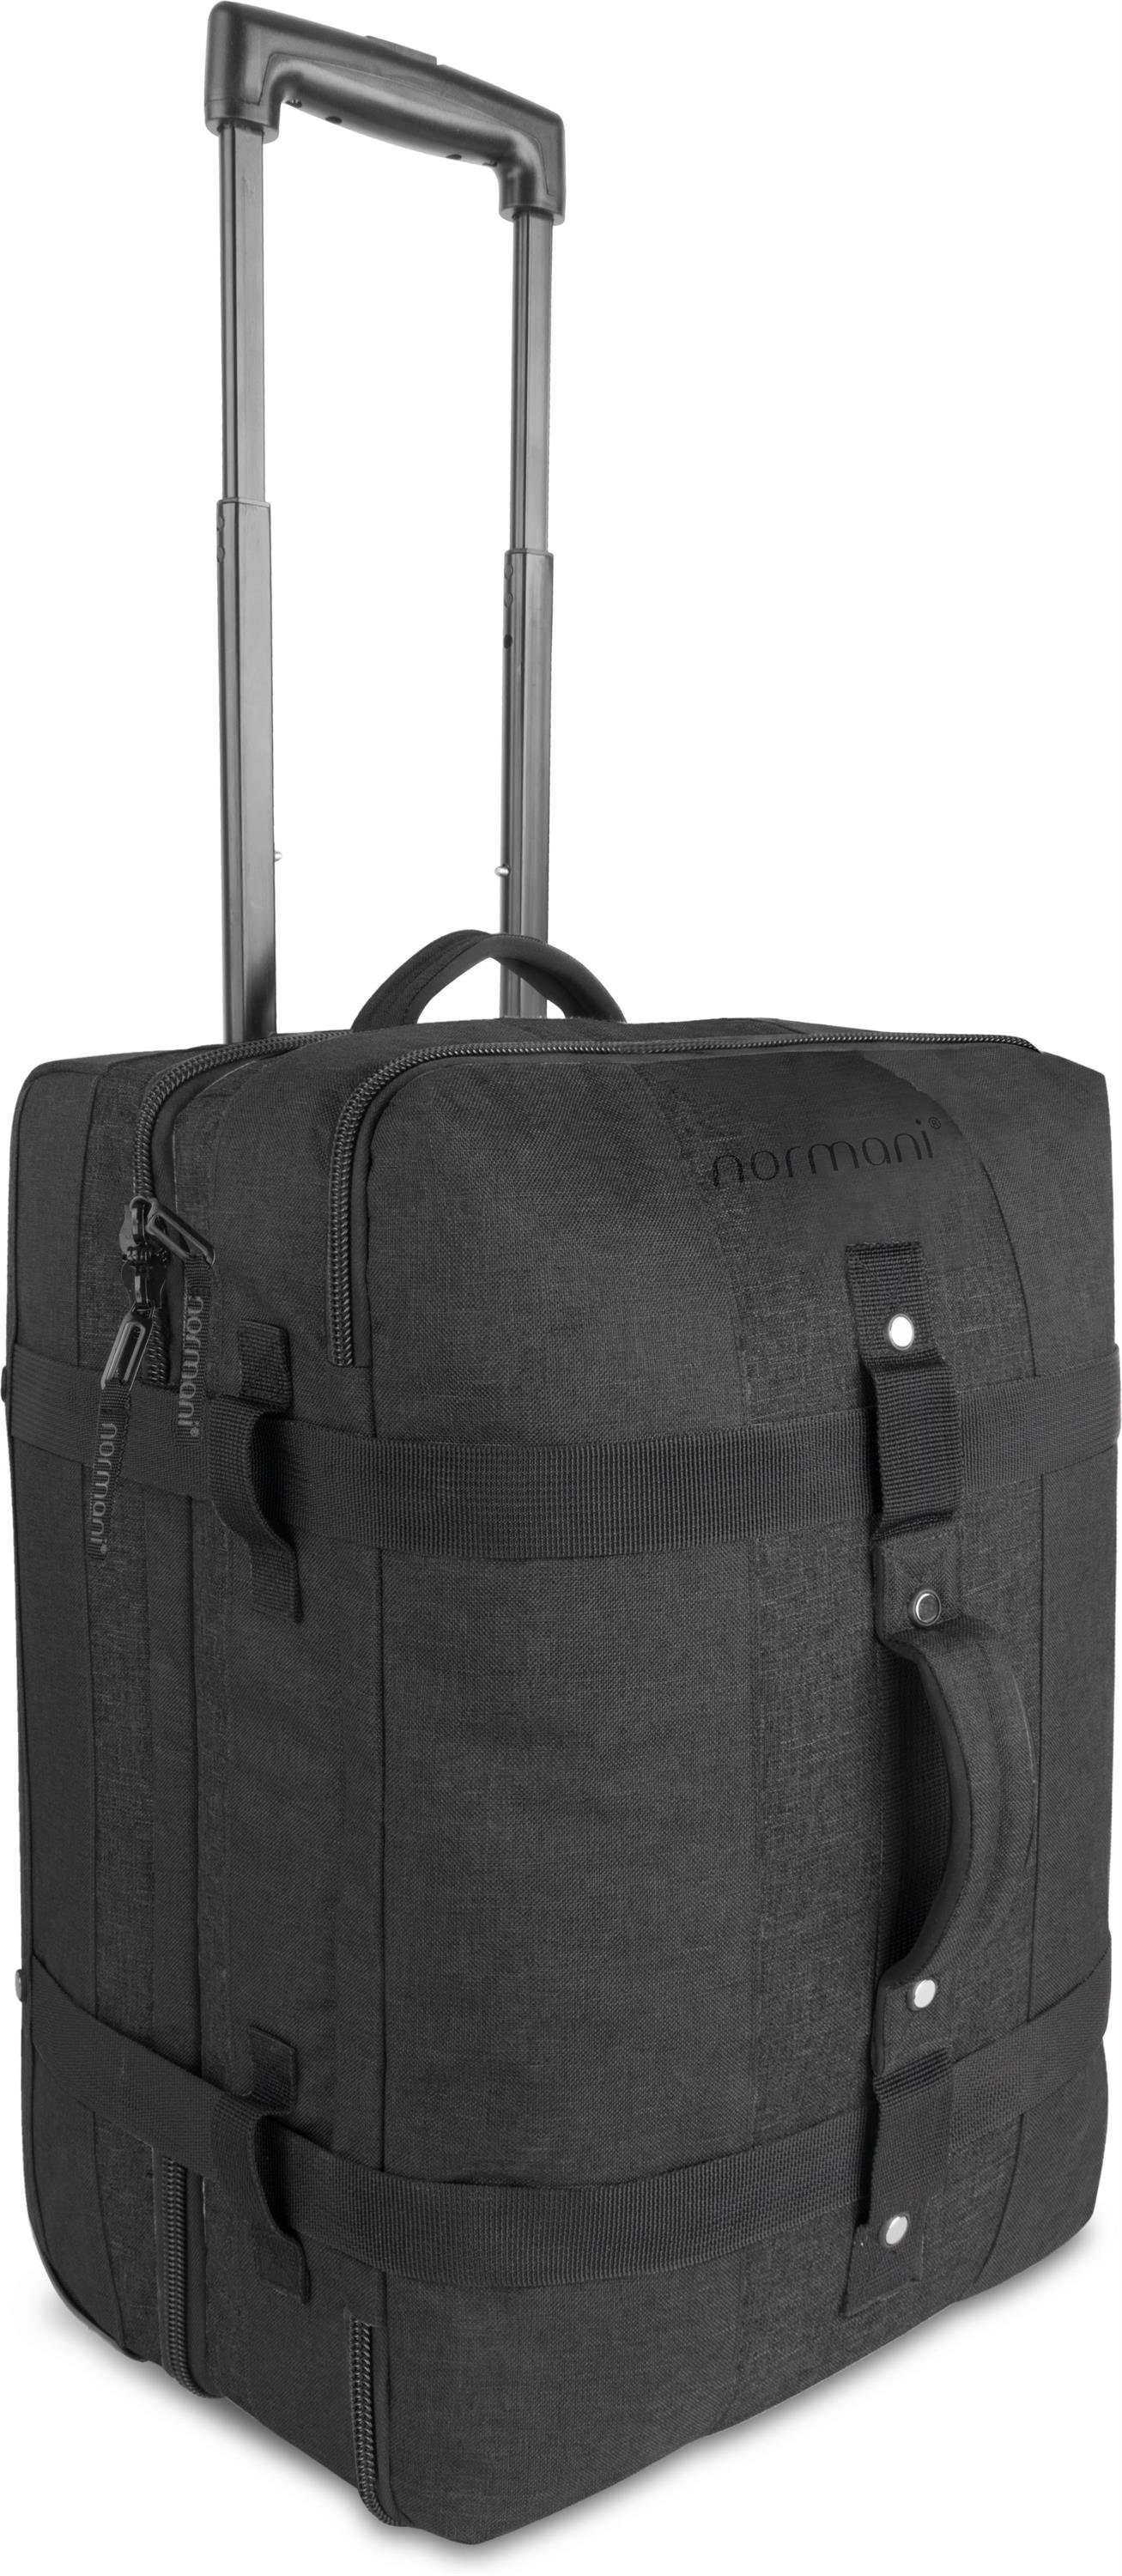 normani Reisetasche Reisetasche mit Handgepäckmaß Aurori 45, Trolley mit clevere Fächeraufteilung Schwarz